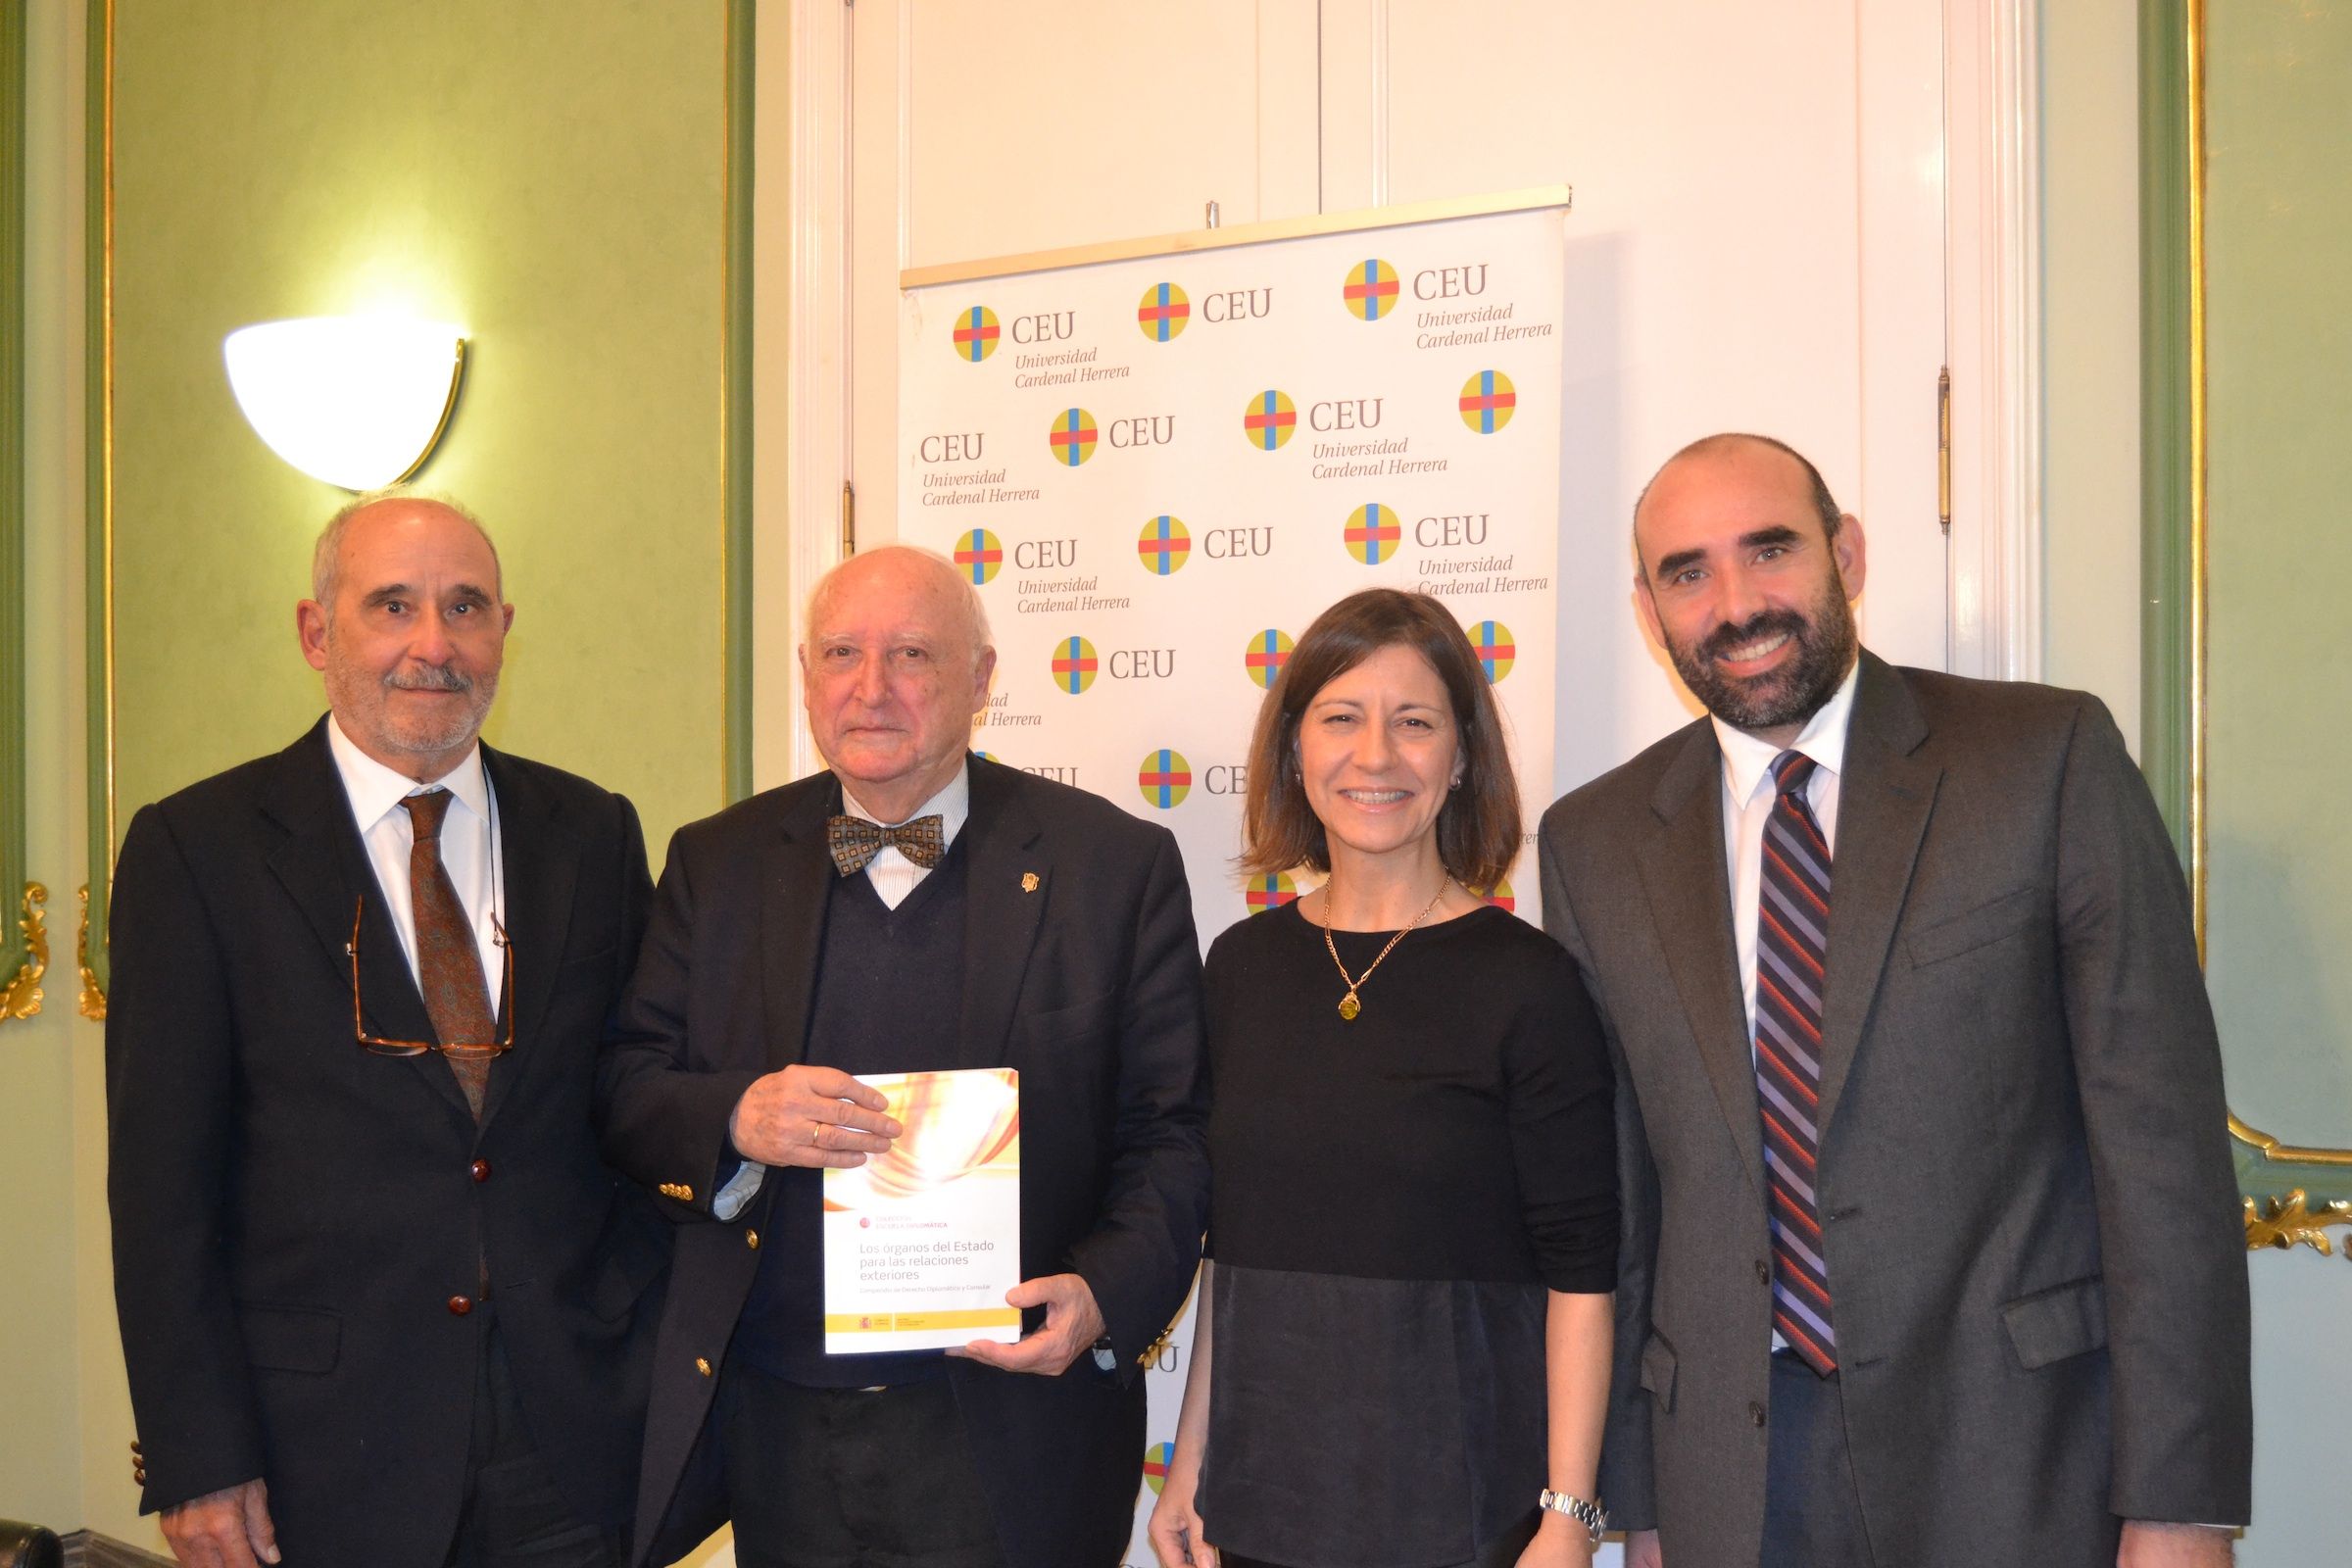 José Juste, José Antonio de Yturriaga, Susana Sanz e Iñaki Bilbao en la presentación del libro del diplomático español.